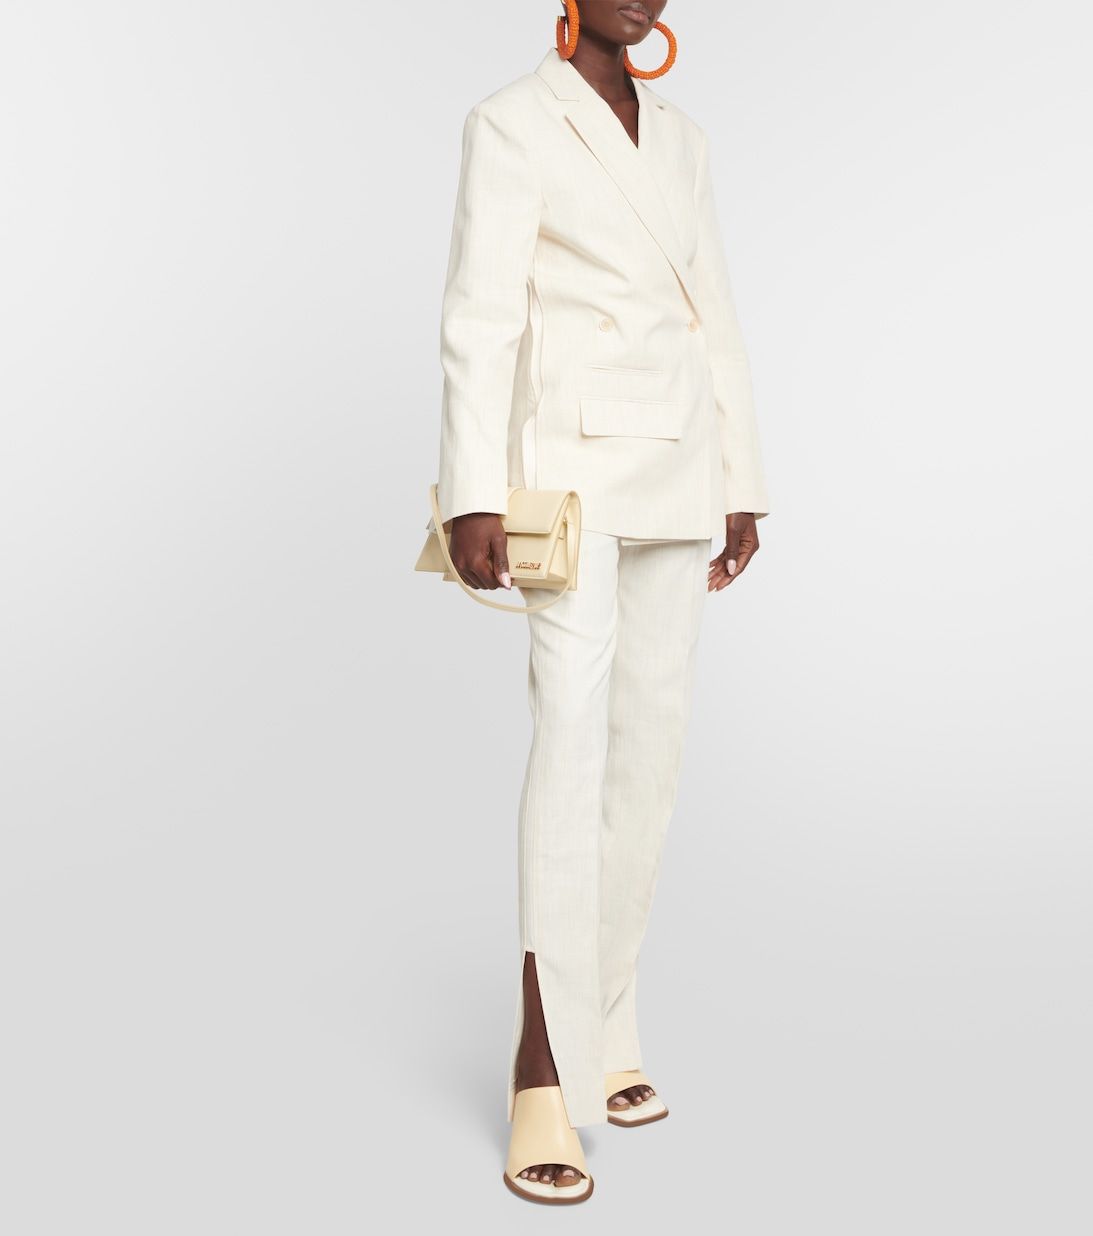 YZRDY Work Striped Office Women's Dress Suits 2 Piece Sets Elegant Women  Blazer Jacket Coat Dresses (Colour: White, Size: L) : Amazon.de: Fashion